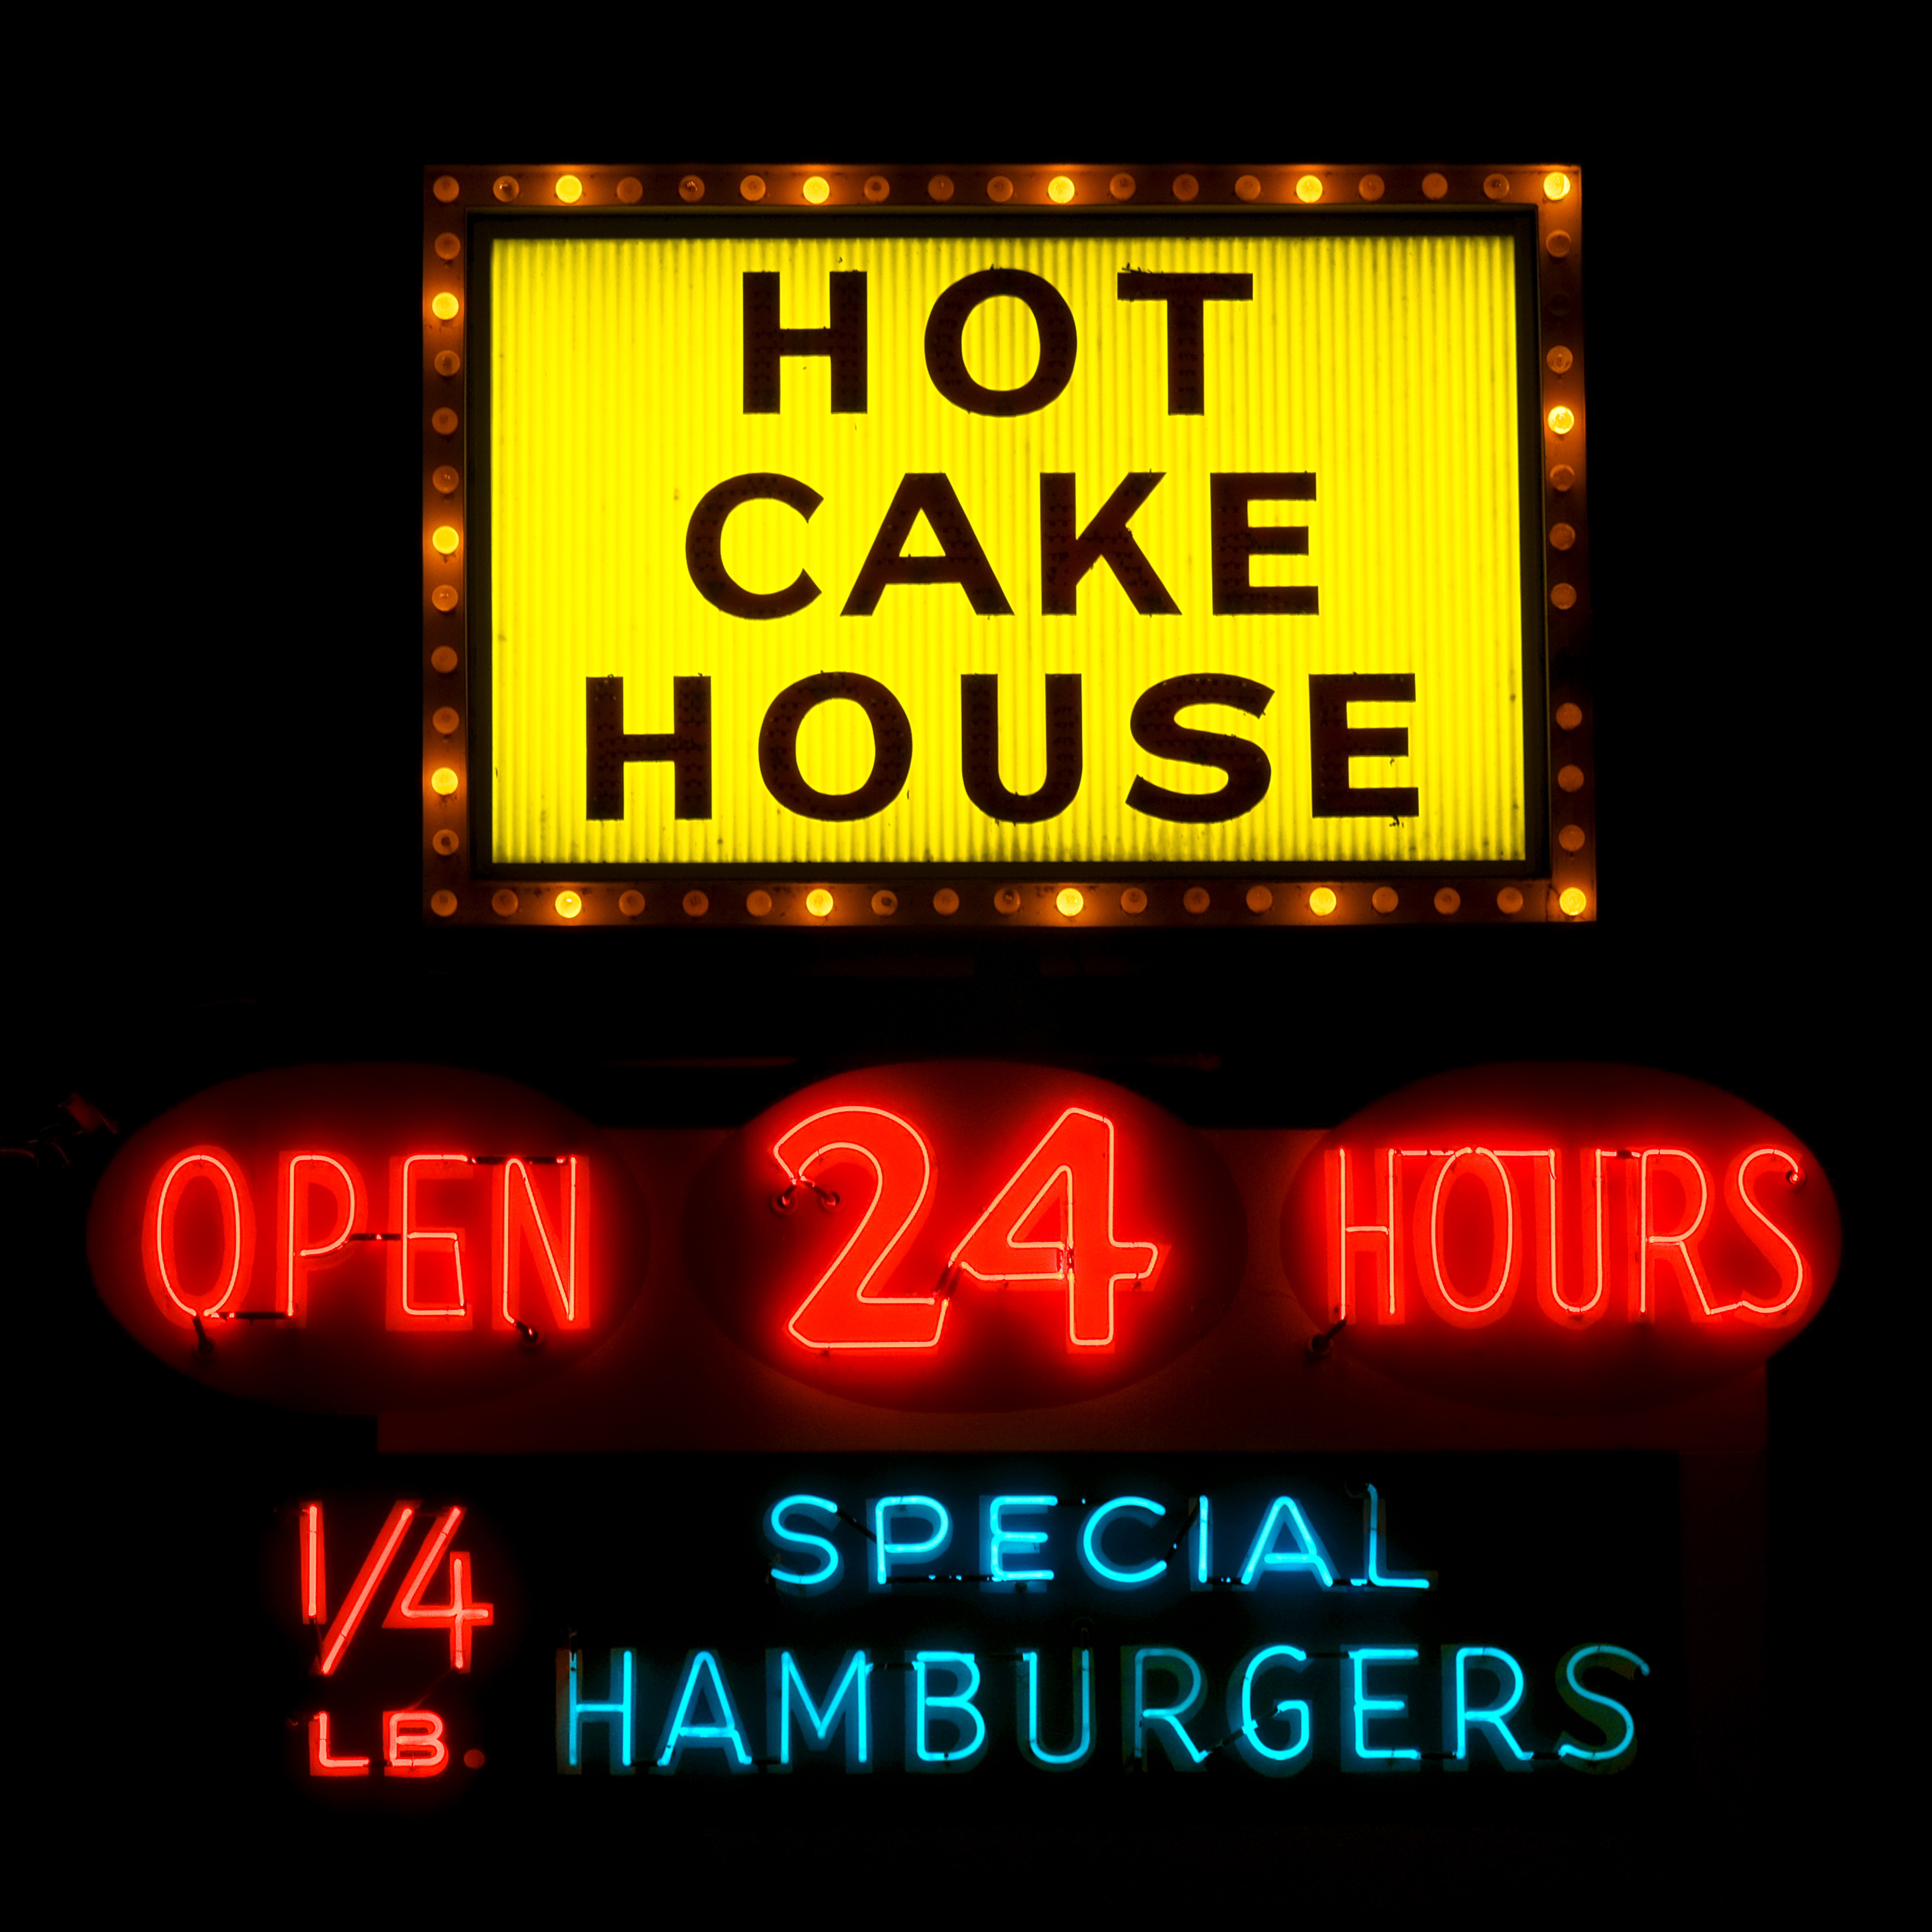 Hotcake House - 1002 SE Powell Boulevard, Portland, Oregon U.S.A. - February 14, 2012